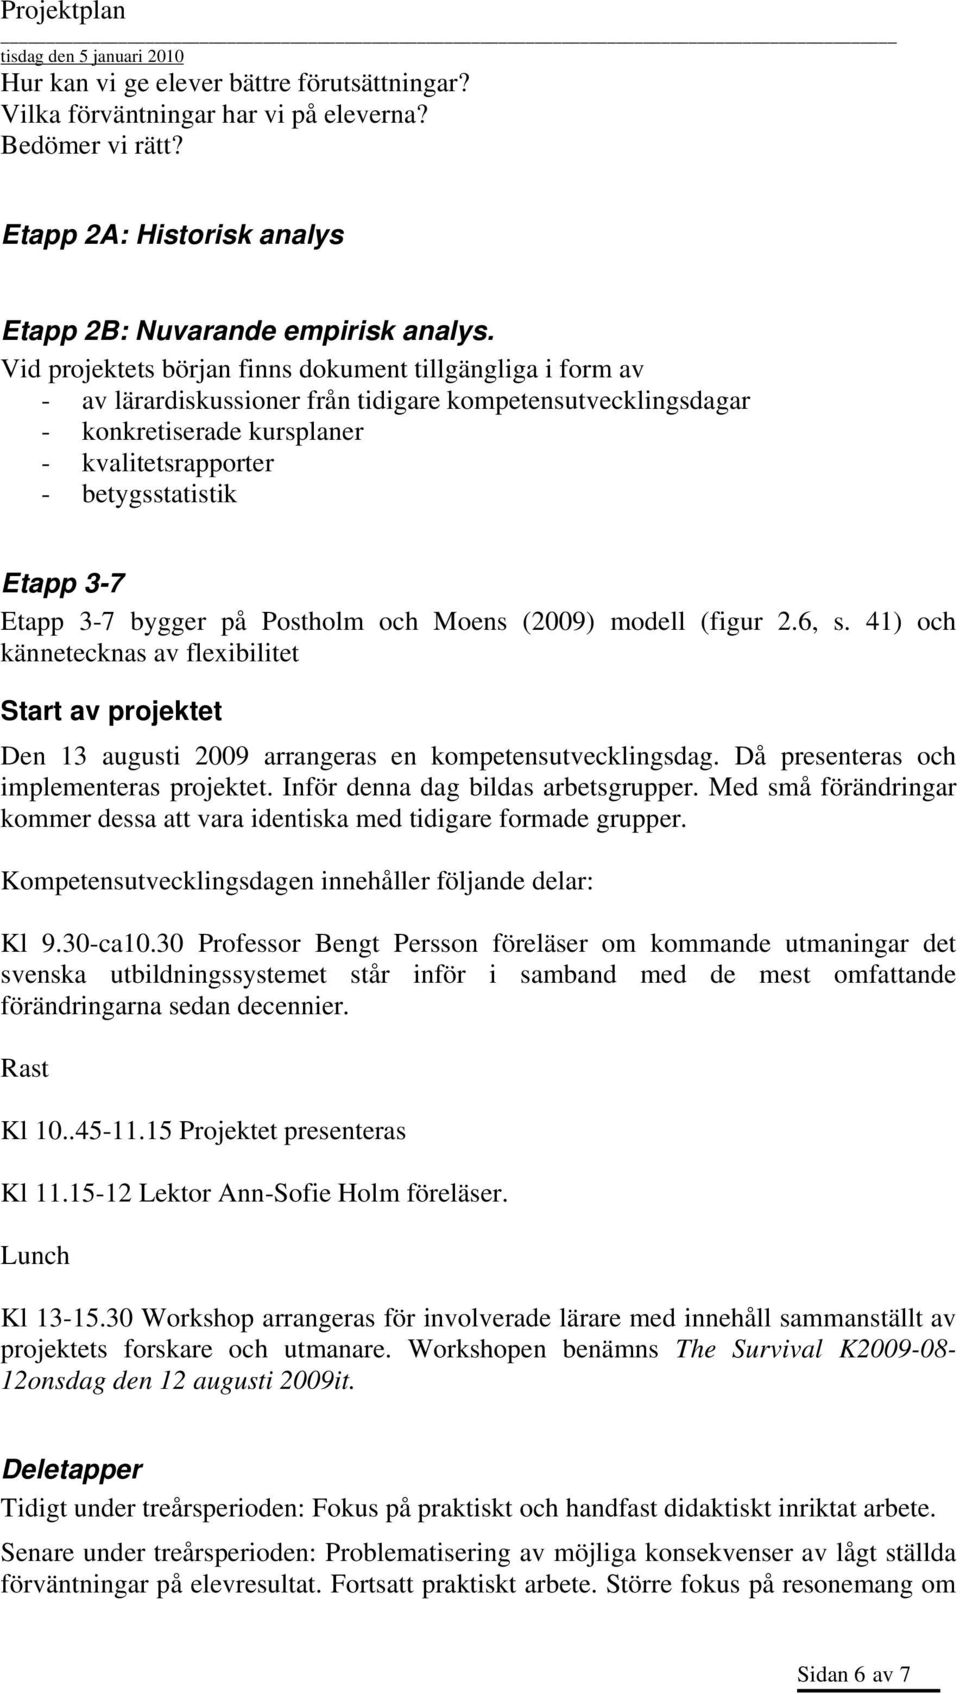 Etapp 3-7 bygger på Postholm och Moens (2009) modell (figur 2.6, s. 41) och kännetecknas av flexibilitet Start av projektet Den 13 augusti 2009 arrangeras en kompetensutvecklingsdag.